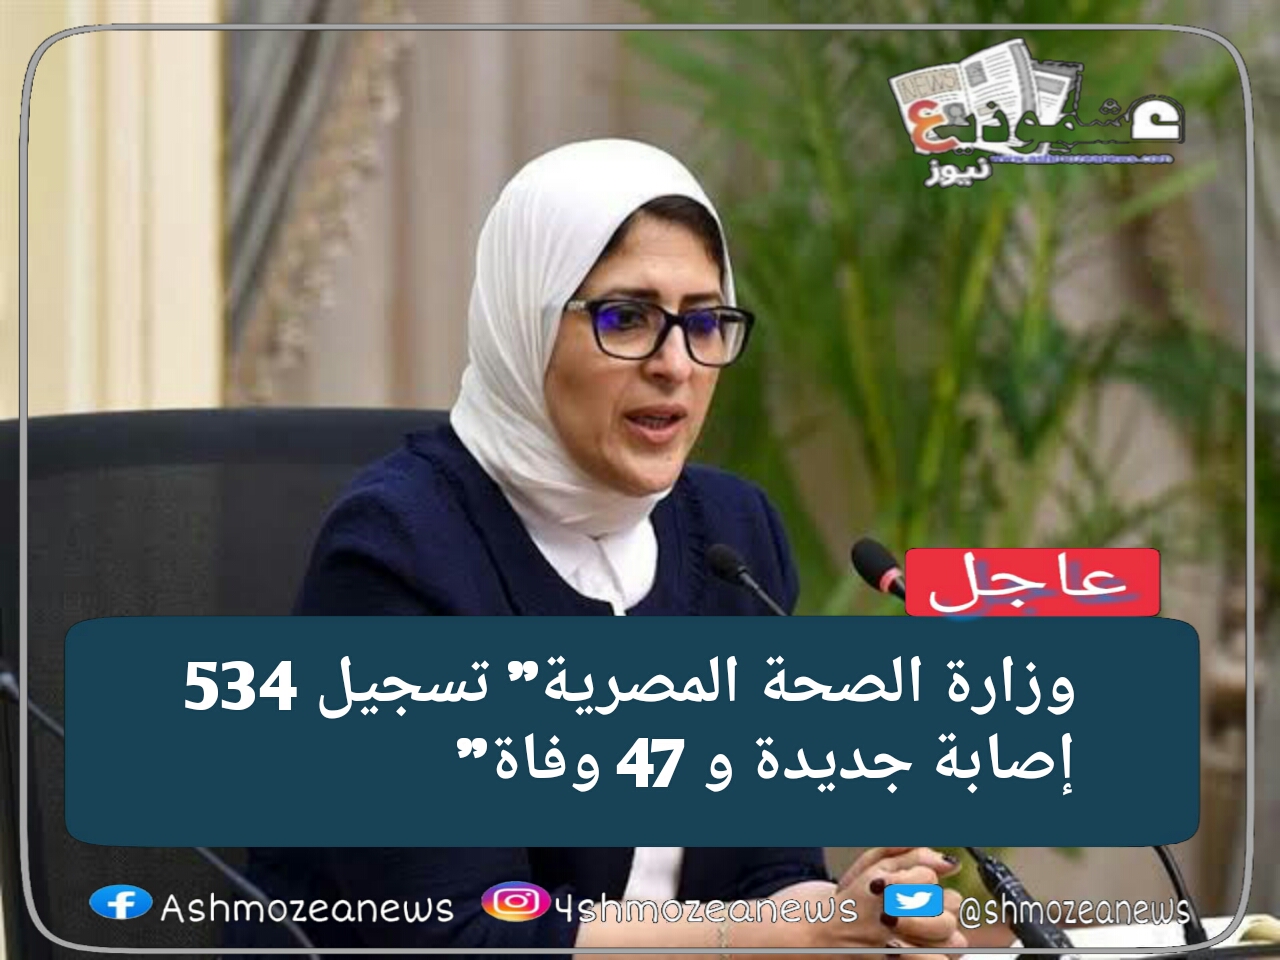 وزارة الصحة المصرية" تسجيل 534 إصابة جديدة و 47 وفاة" 